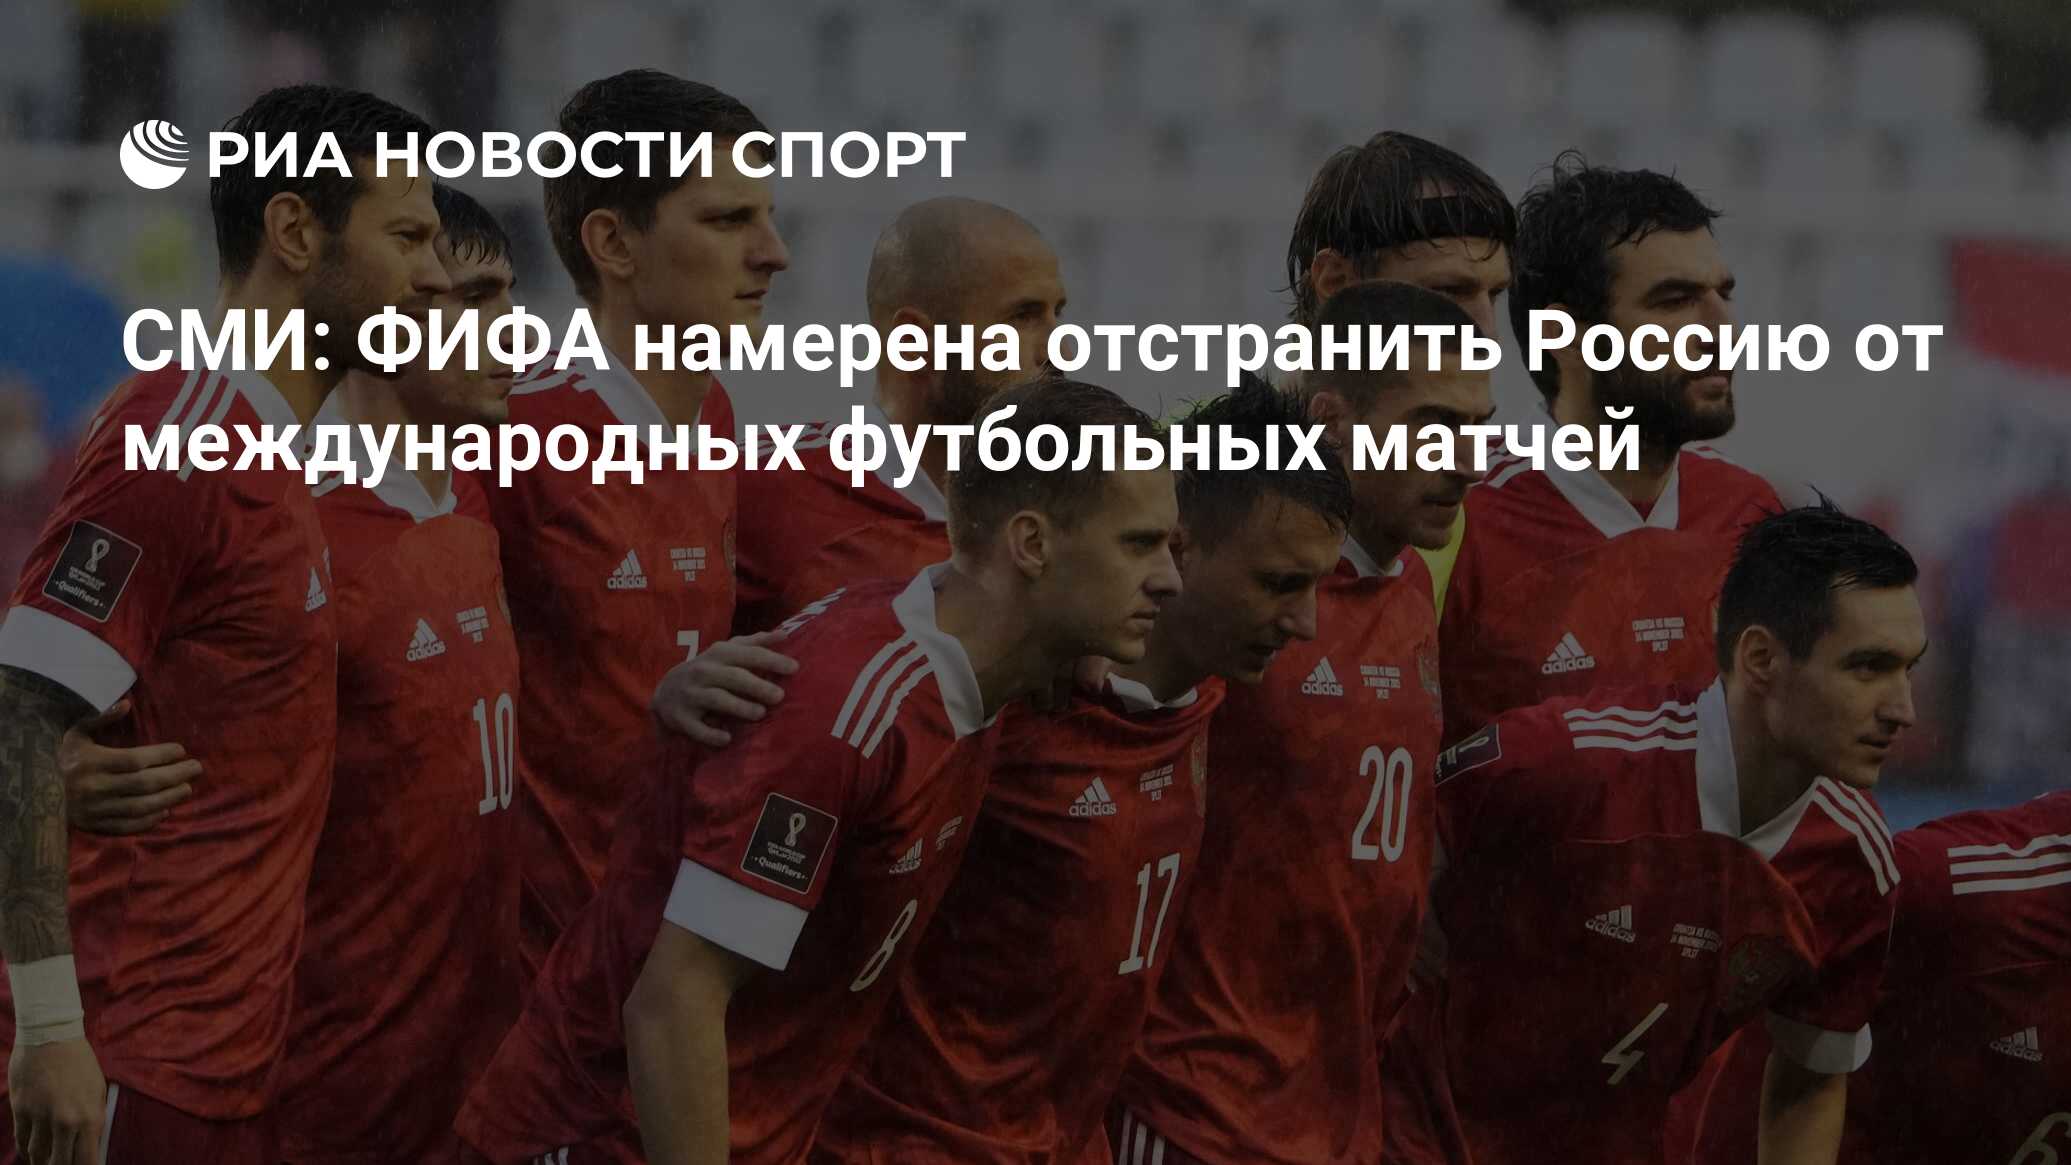 СМИ ФИФА намерена отстранить Россию от международных футбольных матчей РИА Новости Спорт 28 4732